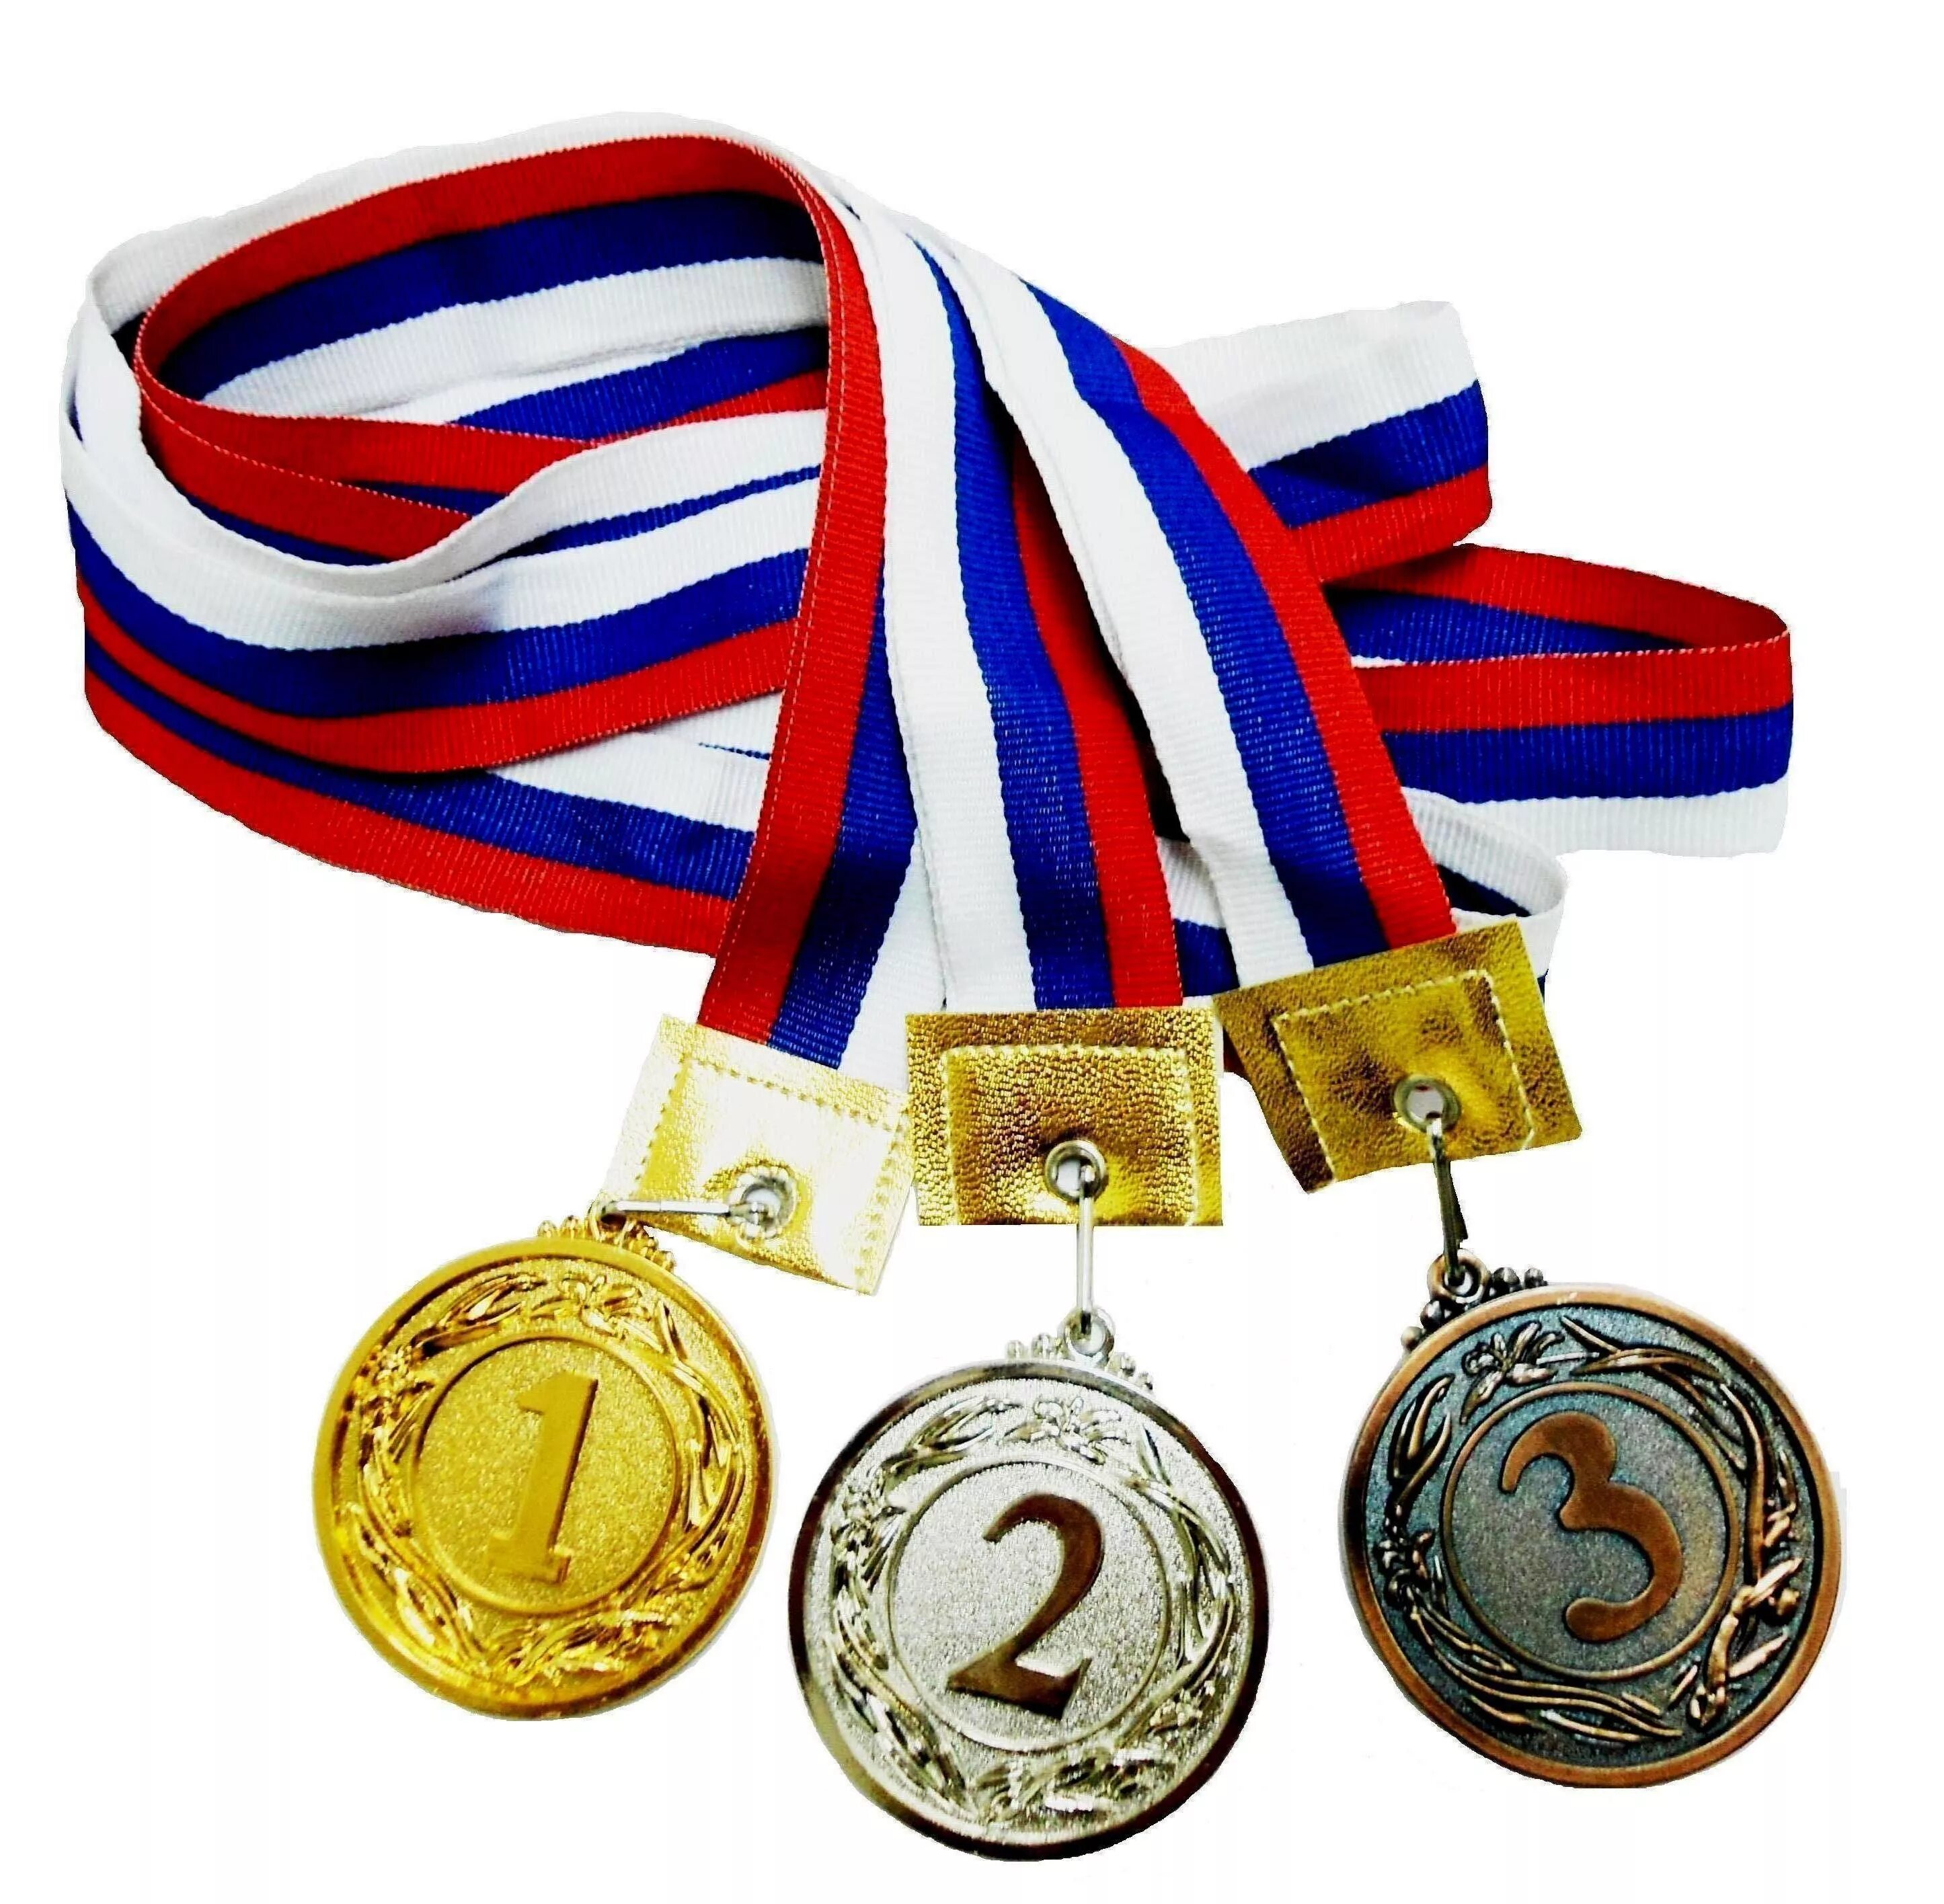 Медали спортивные. Медали наградные спортивные. Спортсмен с медалью. Медаль спорт. Sports medals